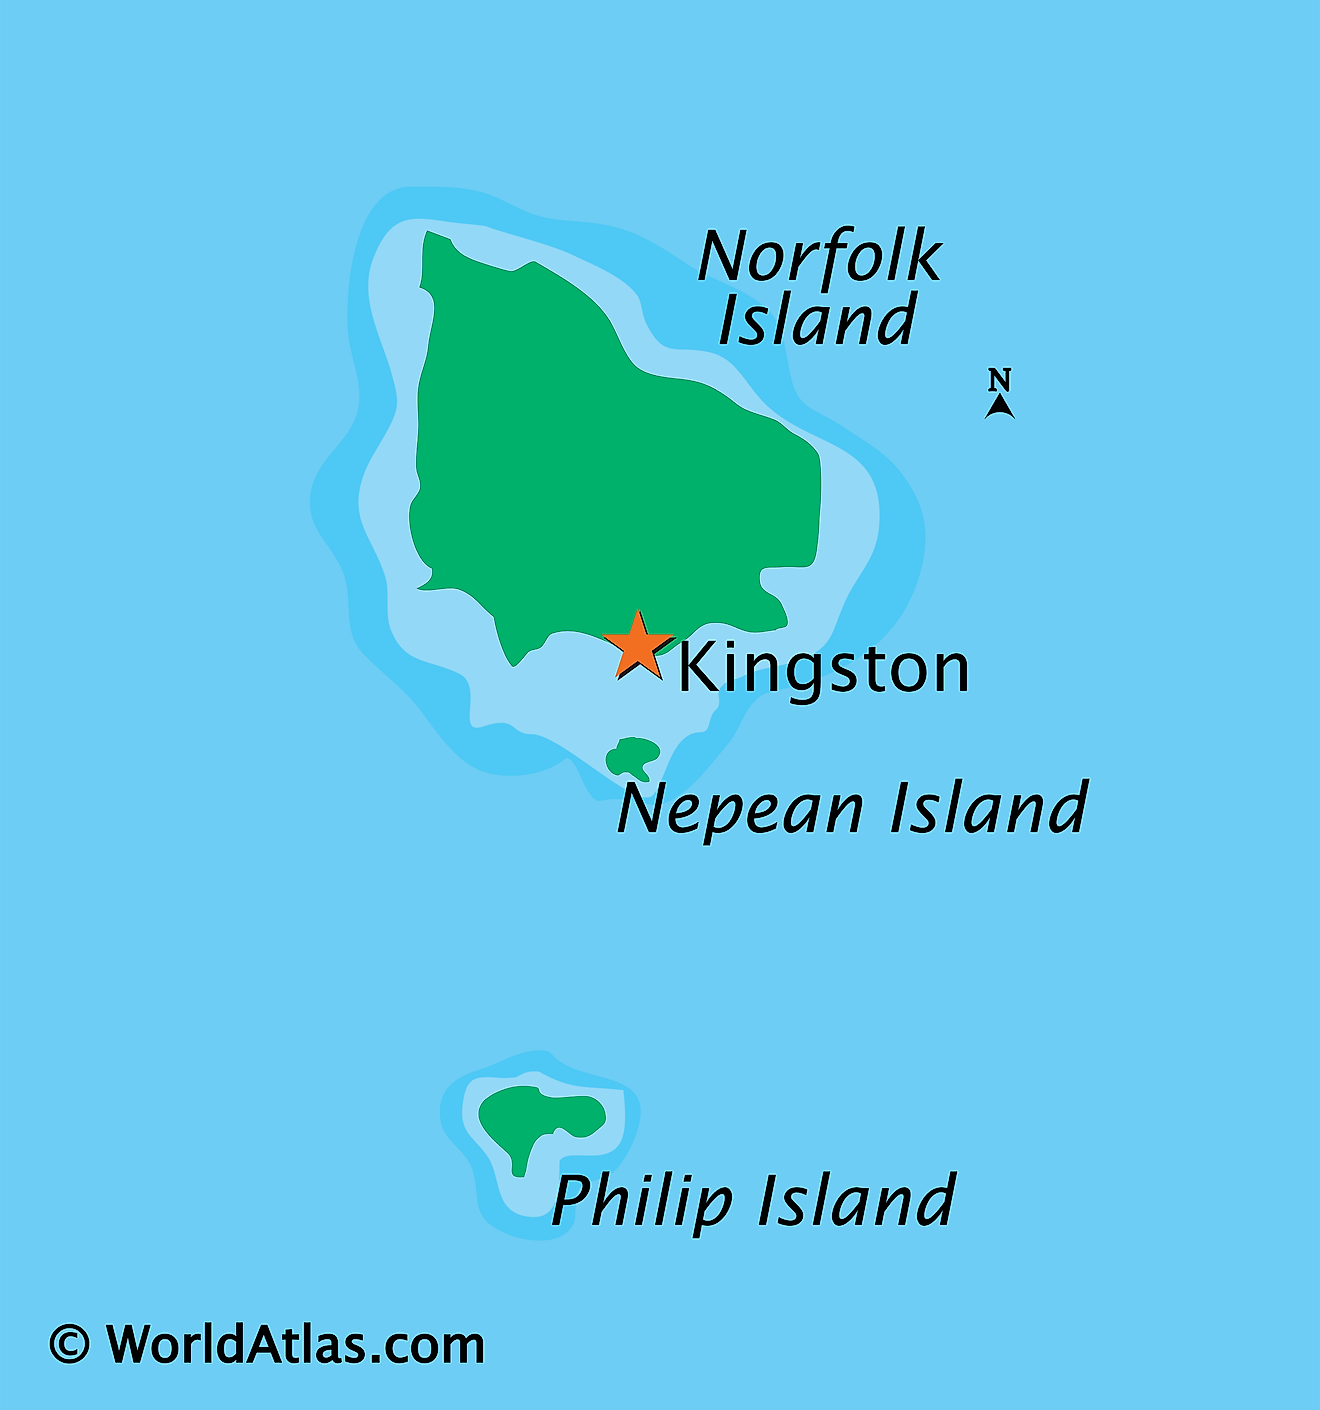 Mapa físico de la isla de Norfolk que muestra las islas principales.